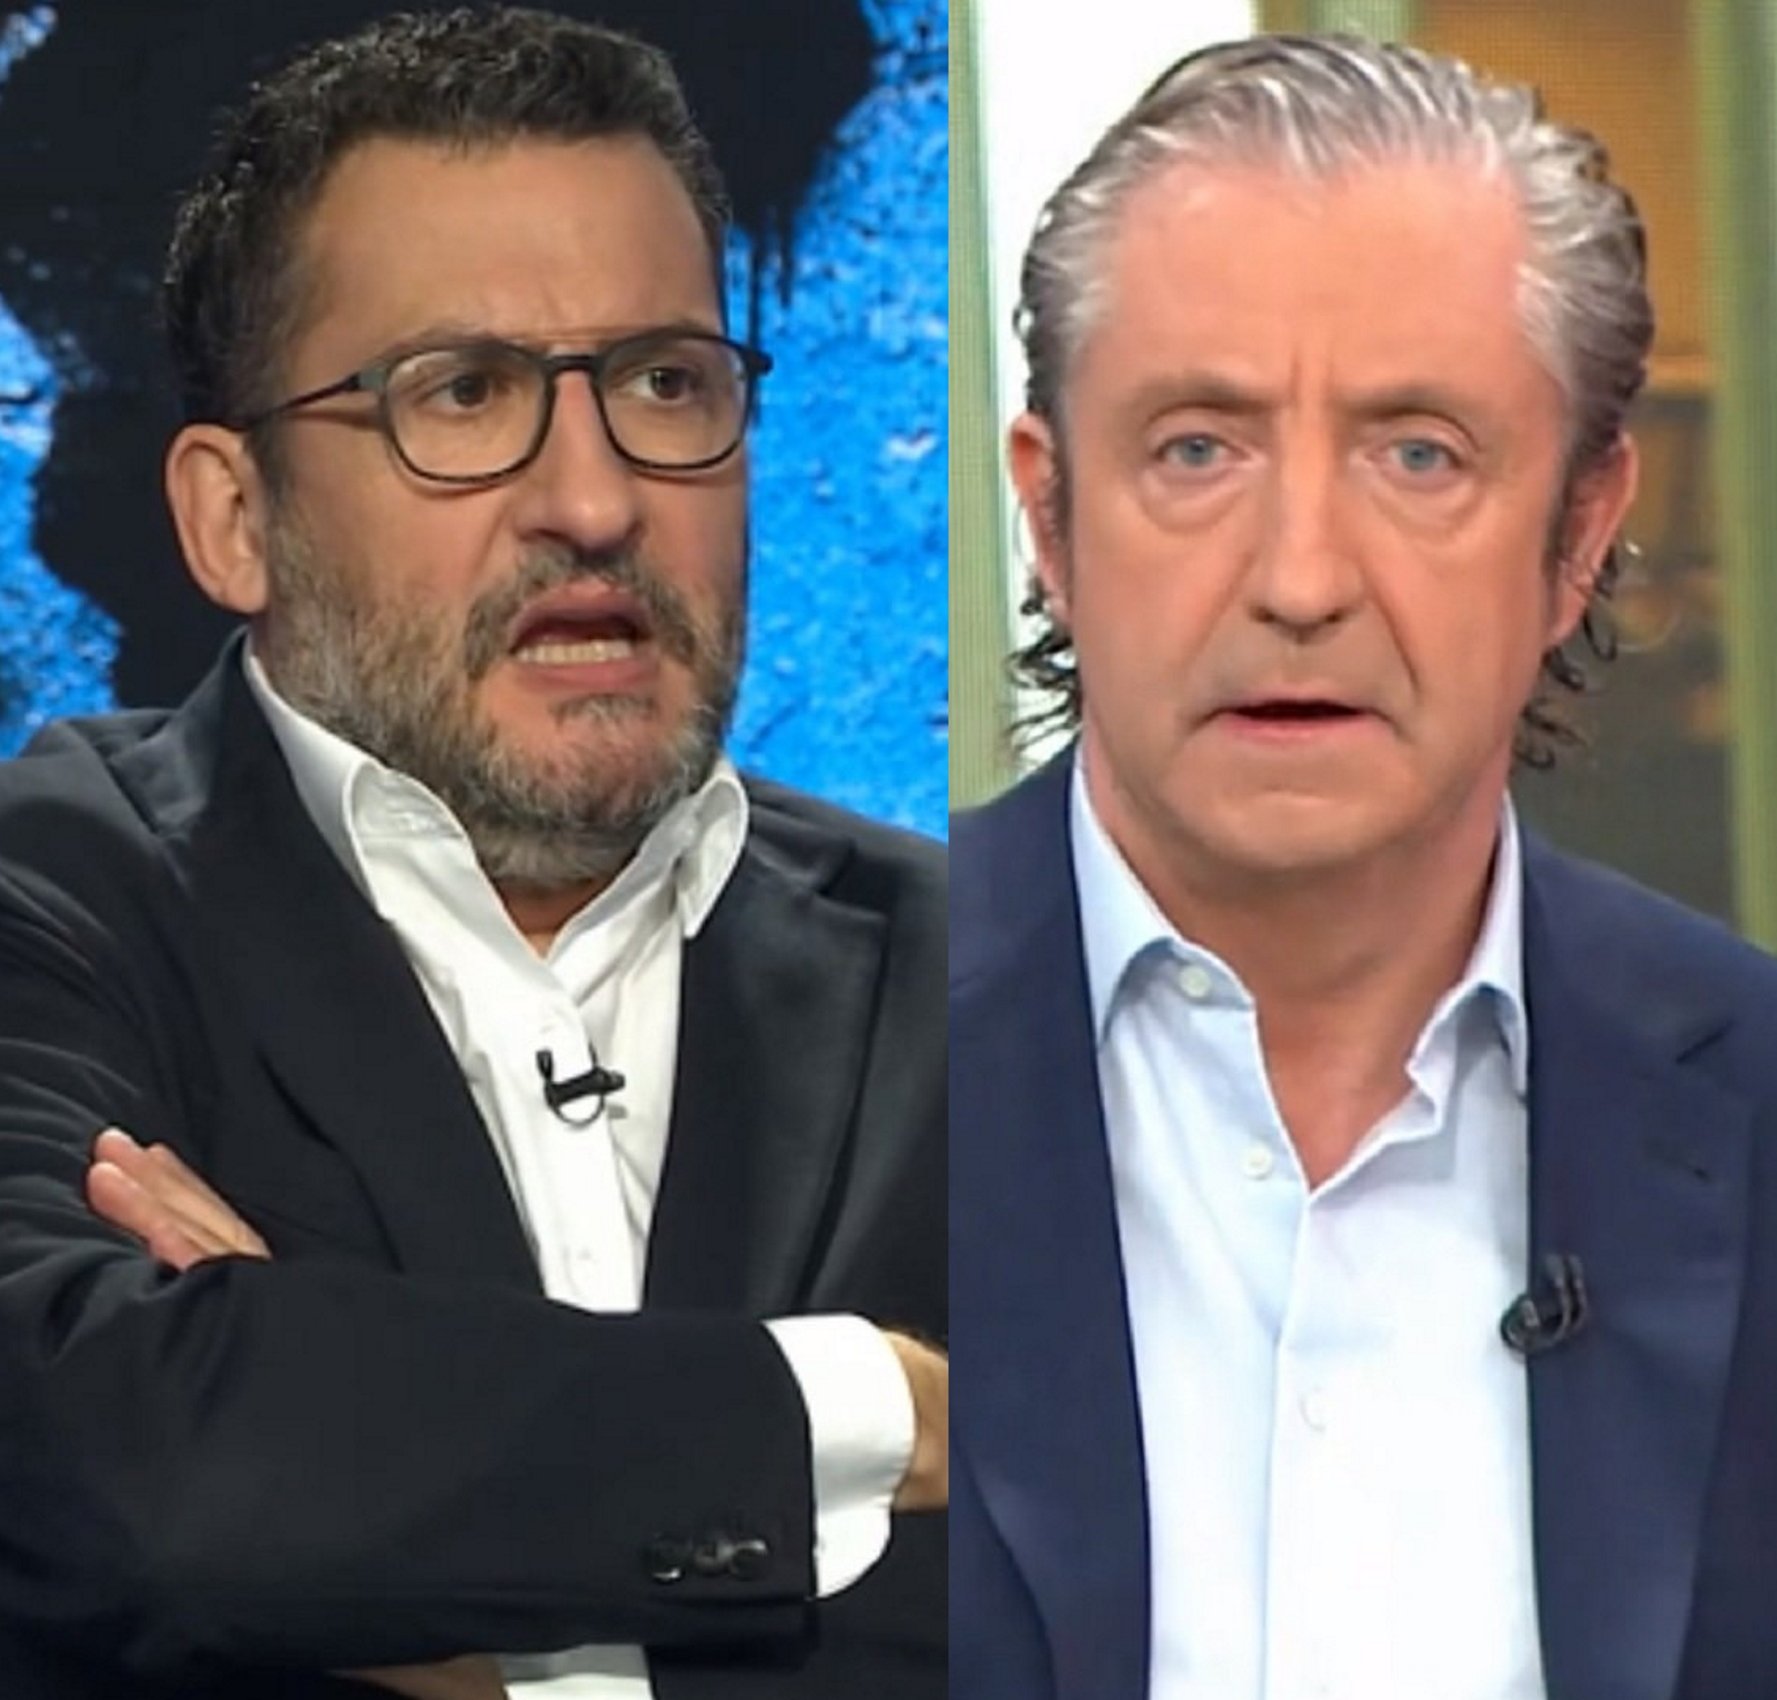 Clatellada de Toni Soler a Josep Pedrerol pel seu debut anti-indepe a La Vanguardia